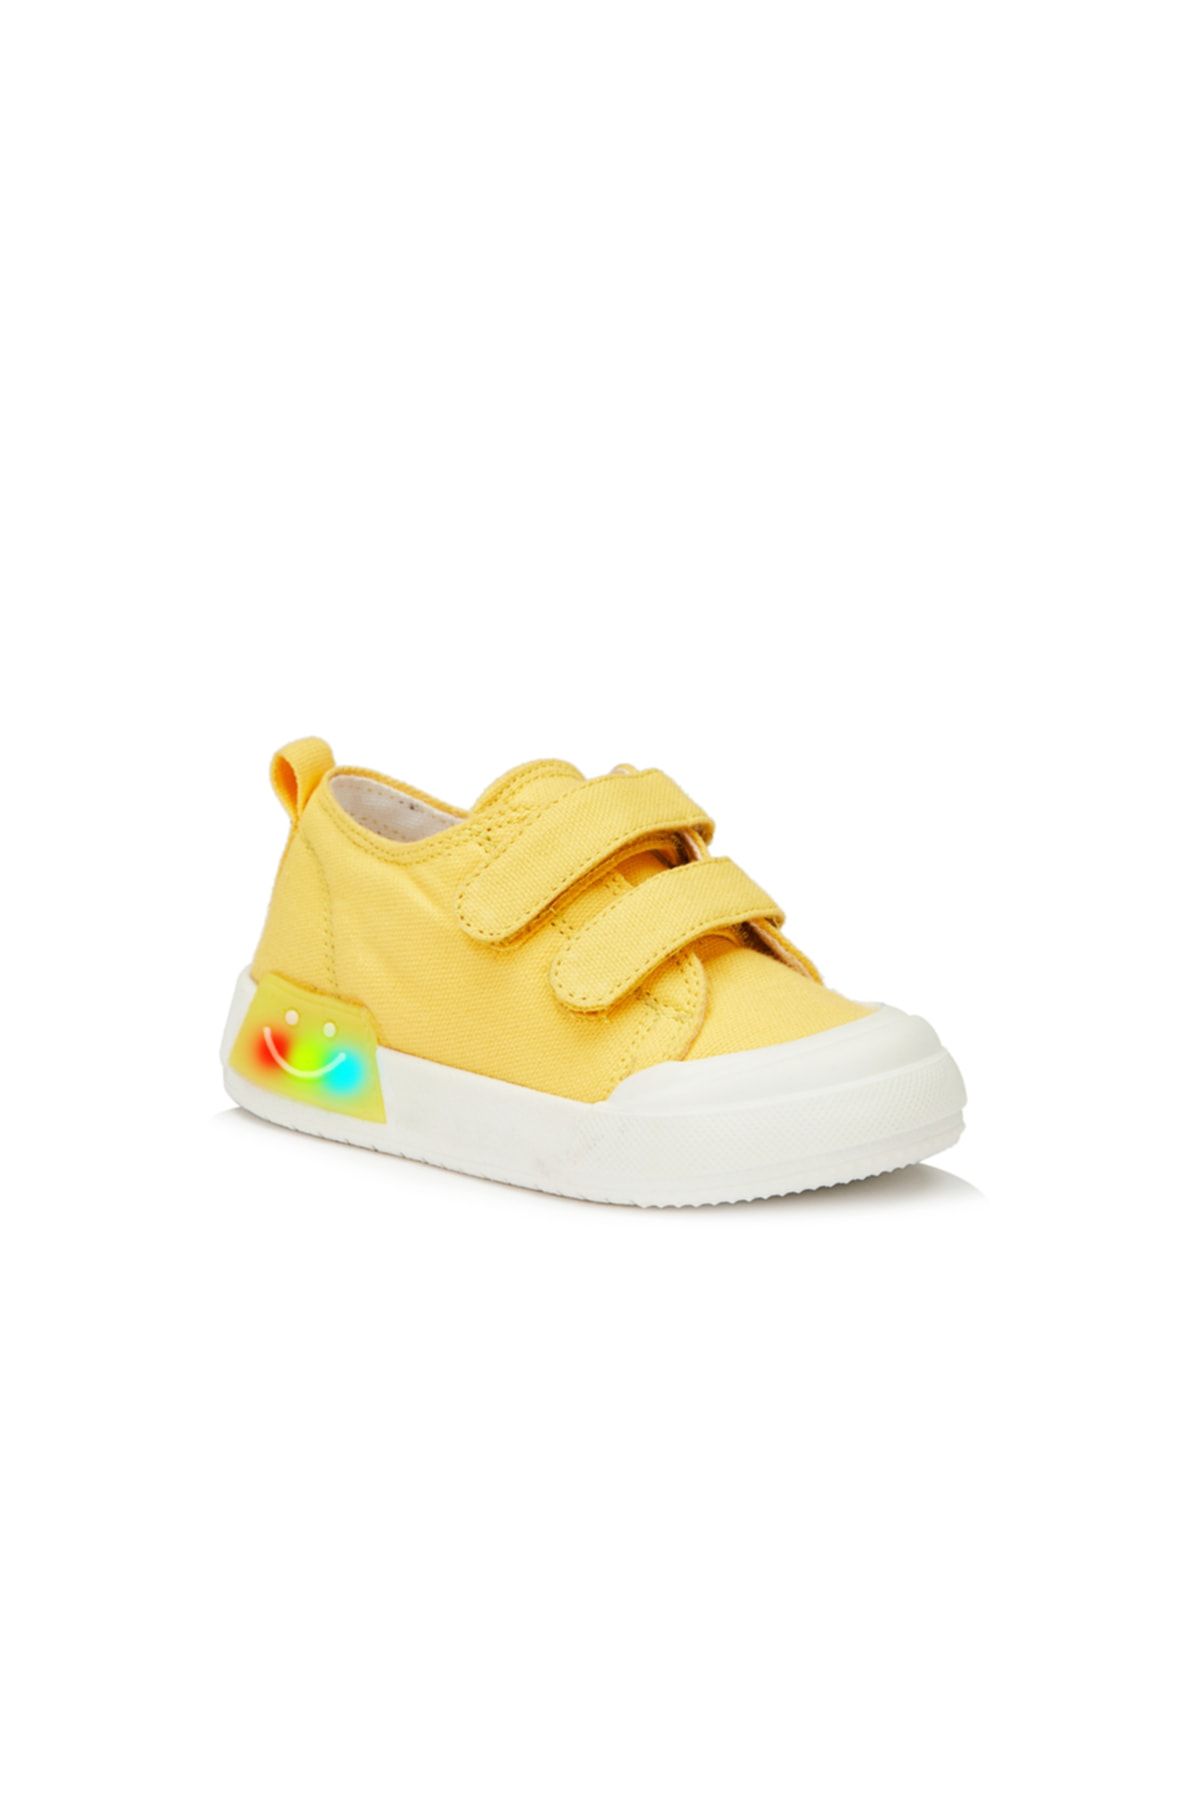 Vicco Luffy Işıklı Unisex Bebe Sarı Spor Ayakkabı